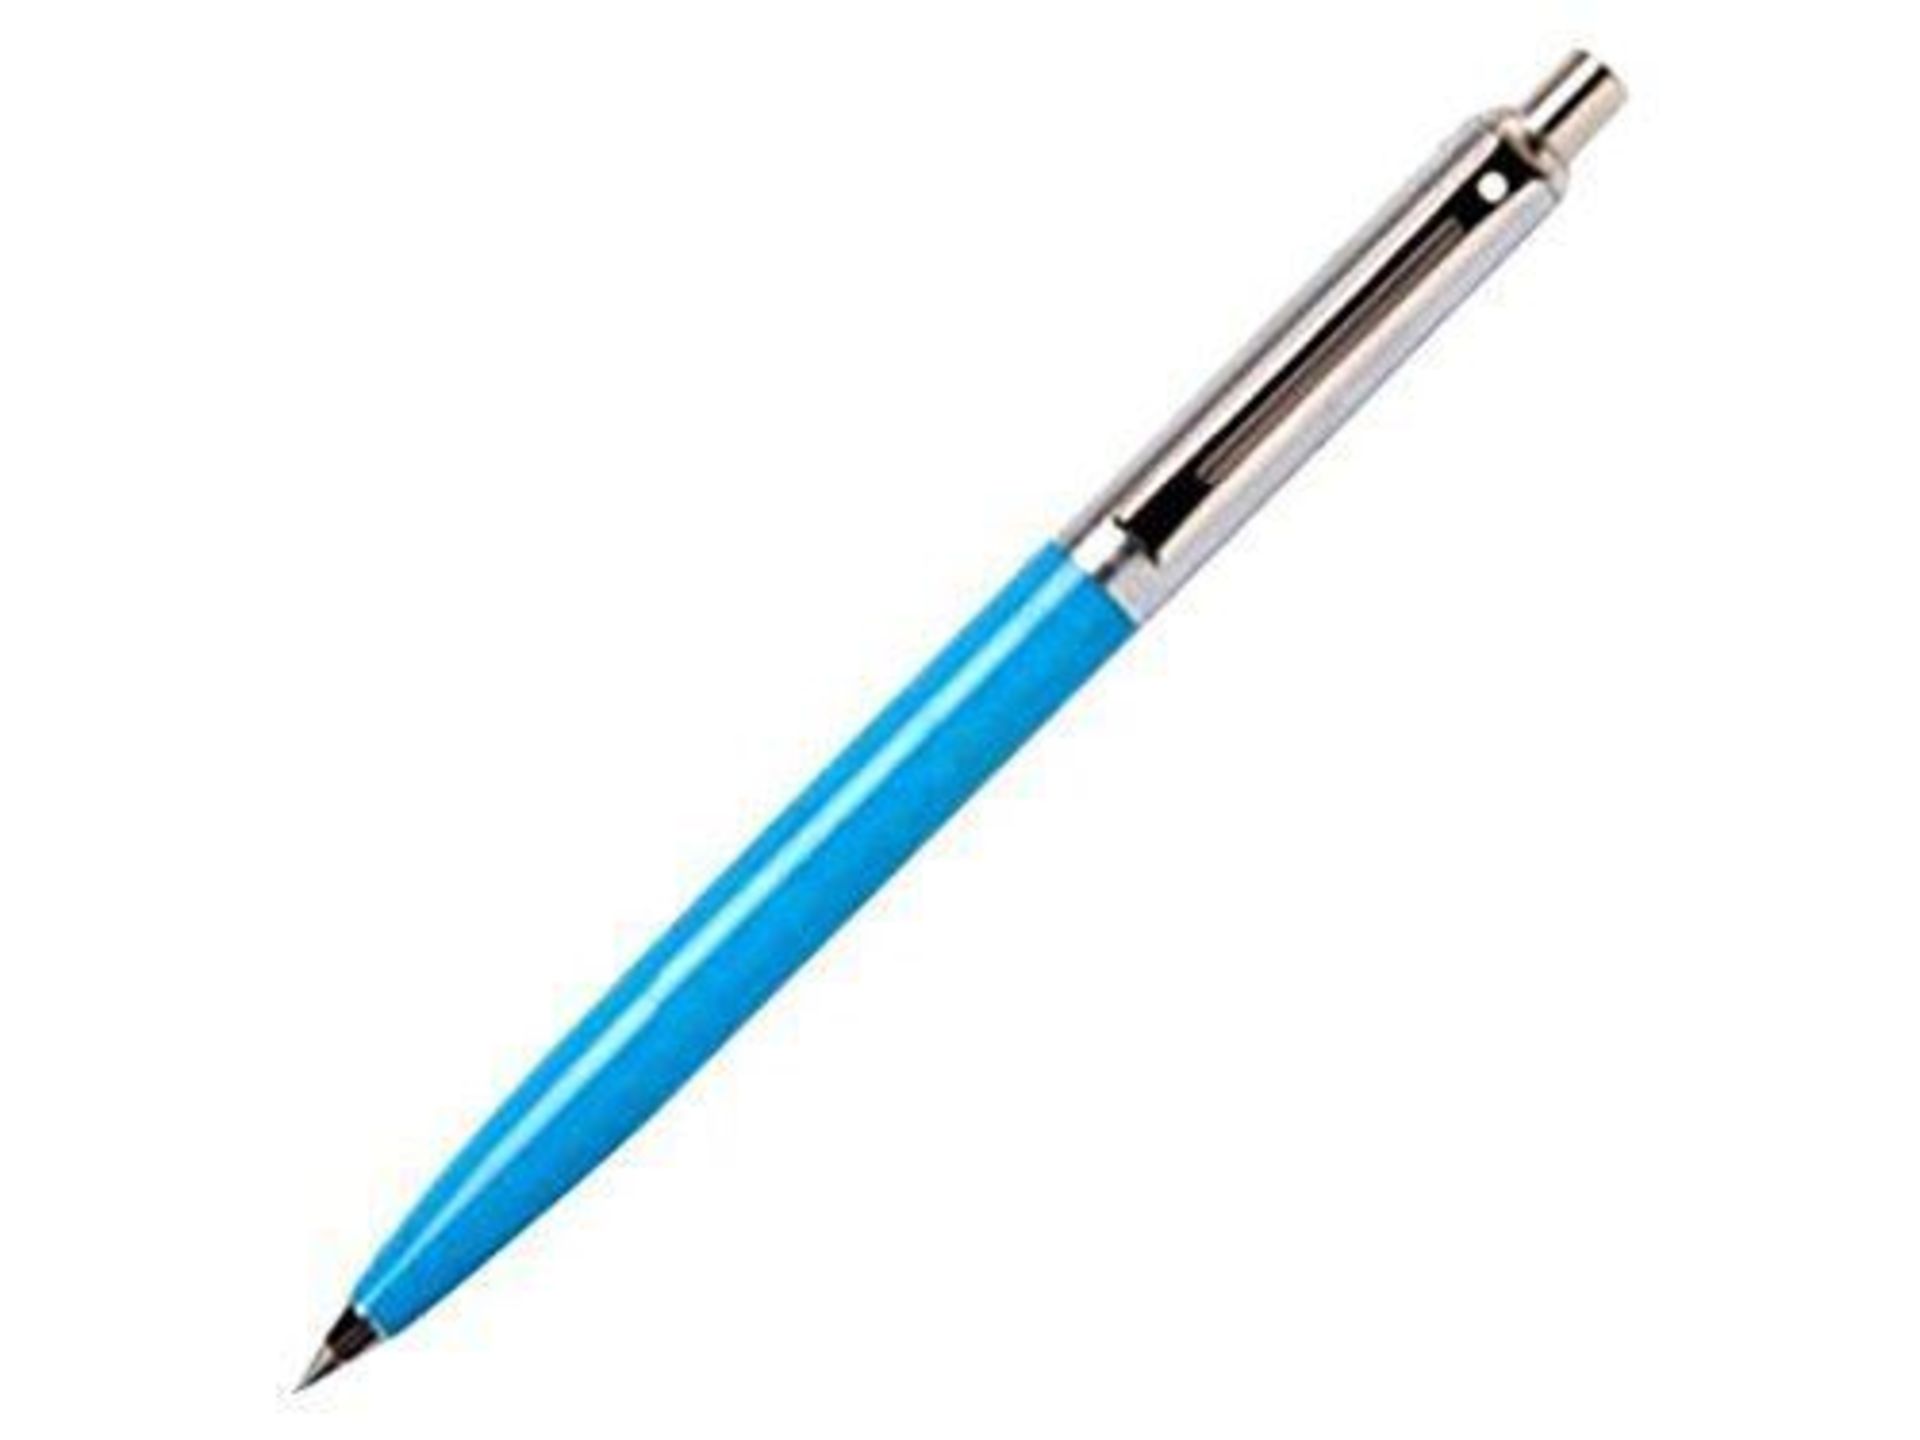 V Brand New Sheaffer Sentinel Ballpoint Pen In Blue/Chrome